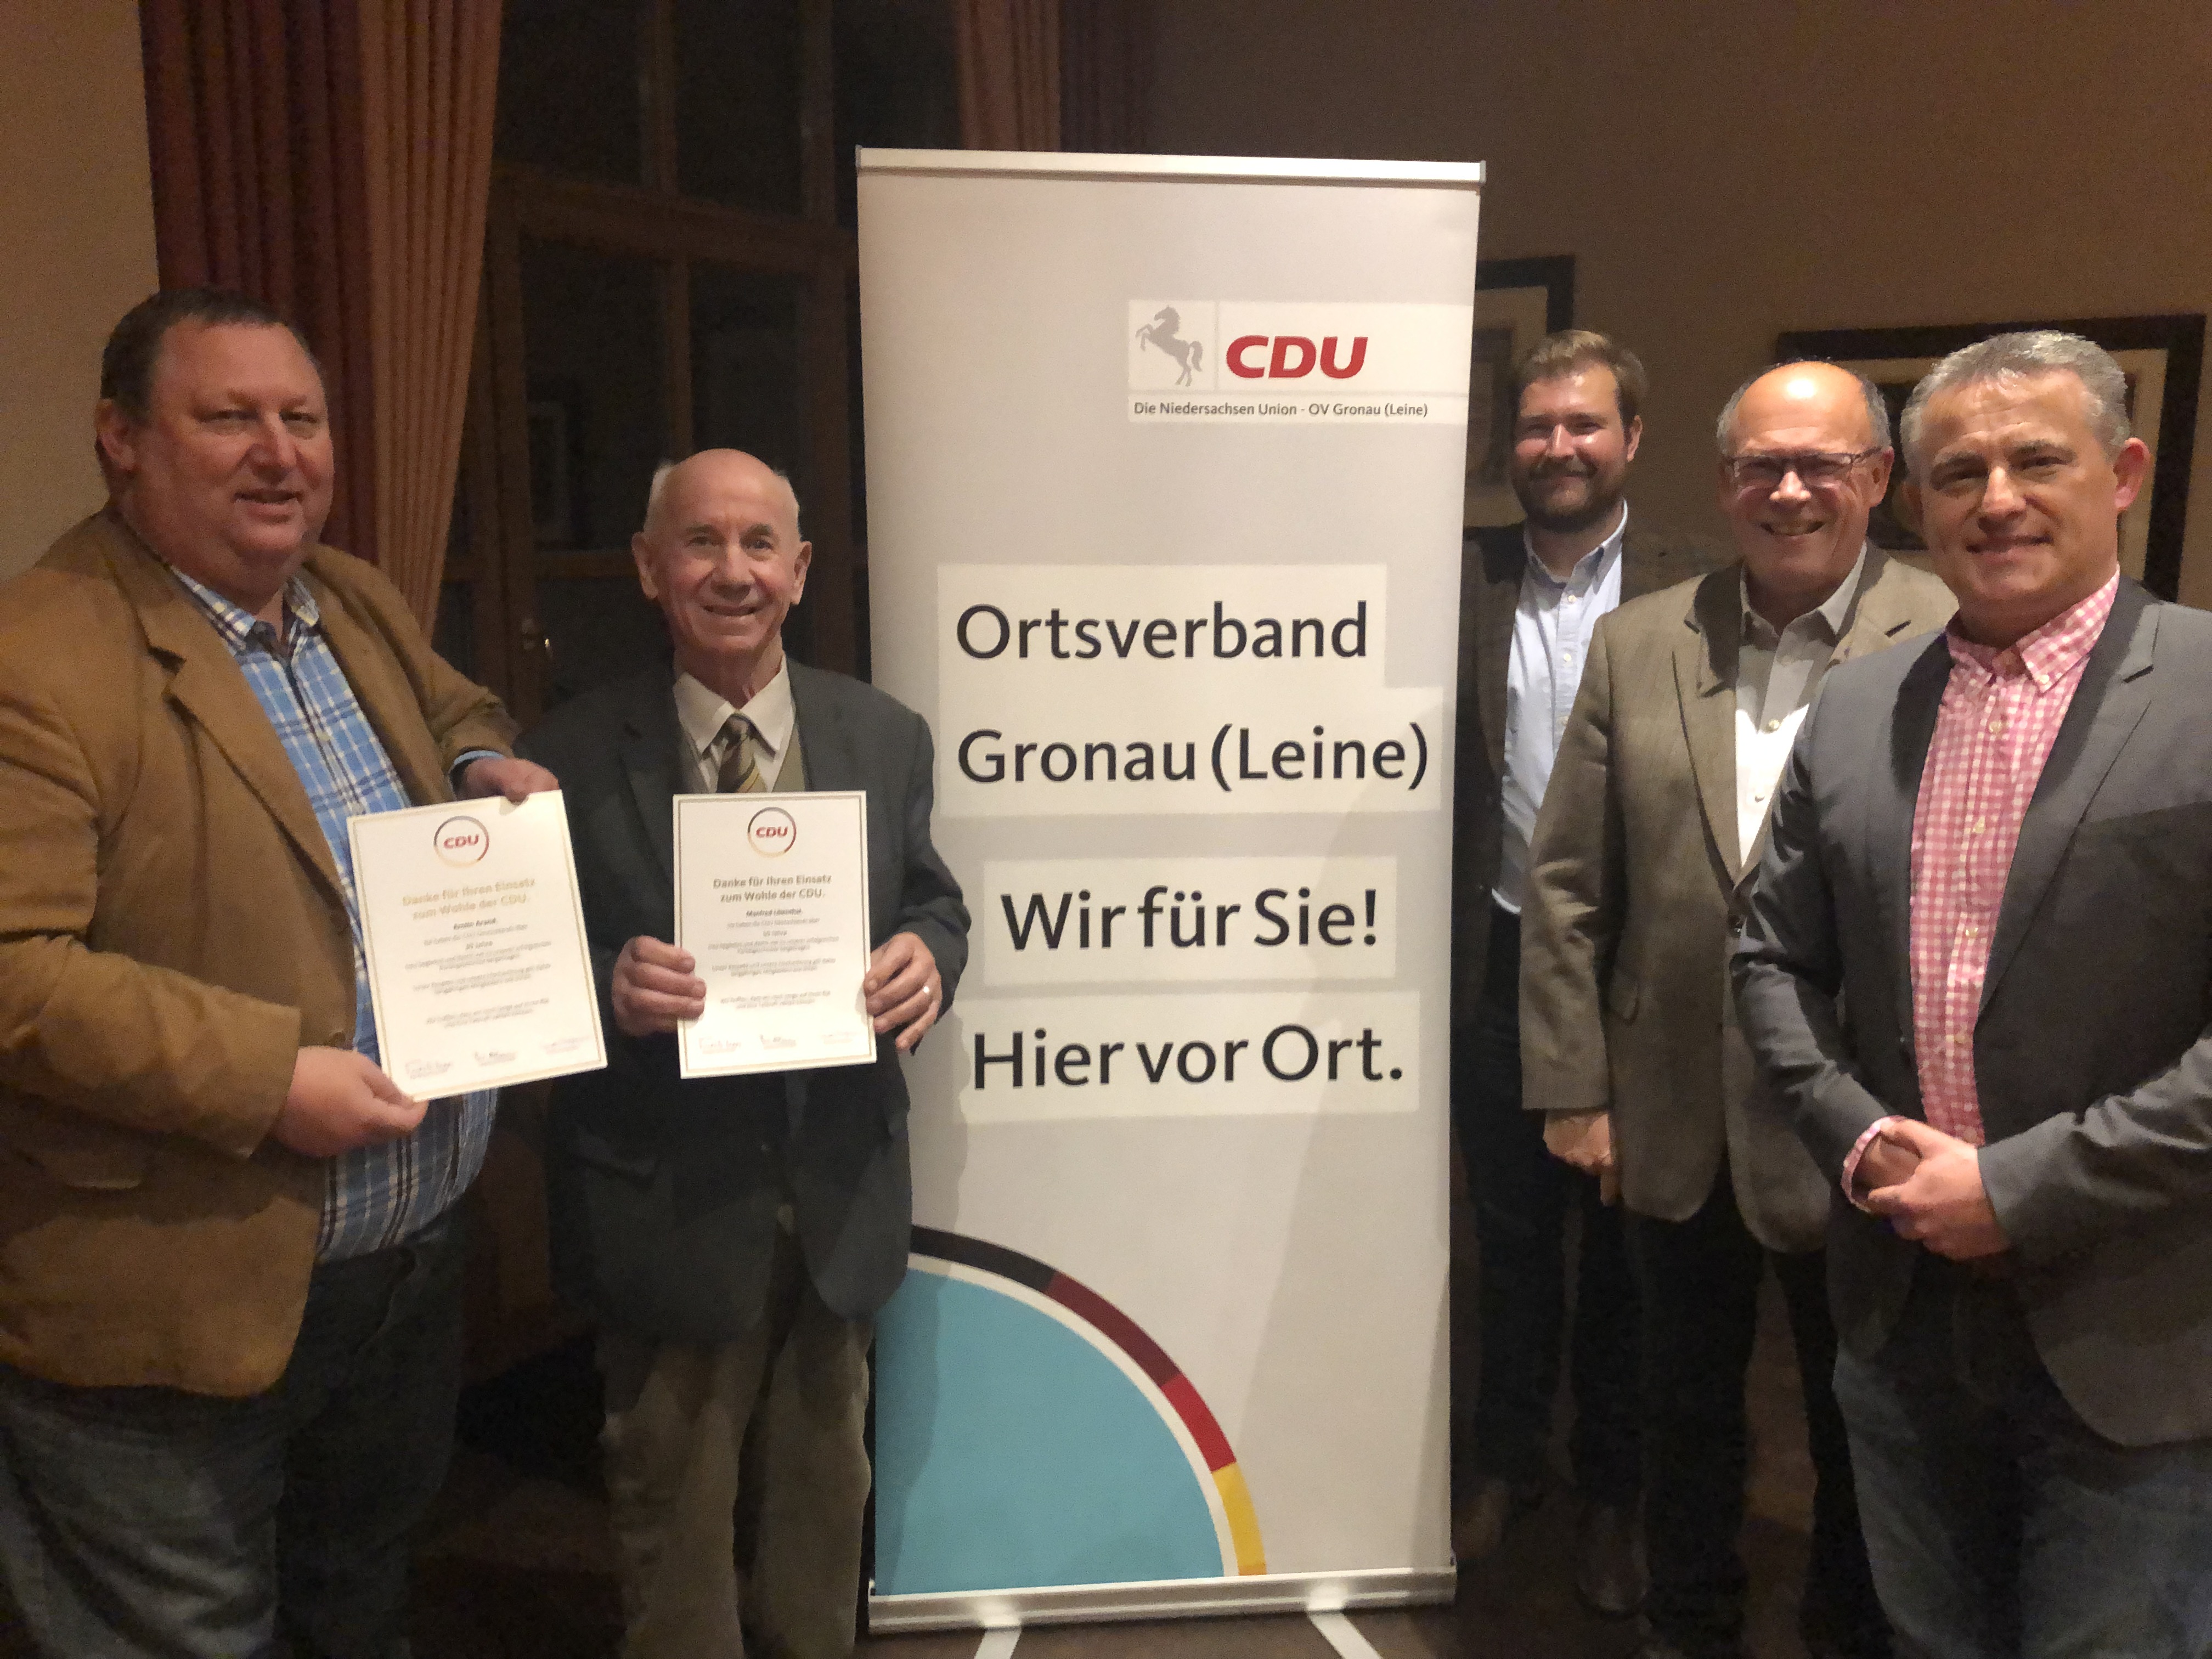 Armin Arand und Manfred Lilienthal (links) wurden für 30 Jahre und 50 Jahre CDU-Mitgliedschaft durch die Vorstandsmitglieder Björn Hopmann, Dietmar Zimmer und Lars Wedekind geehrt.